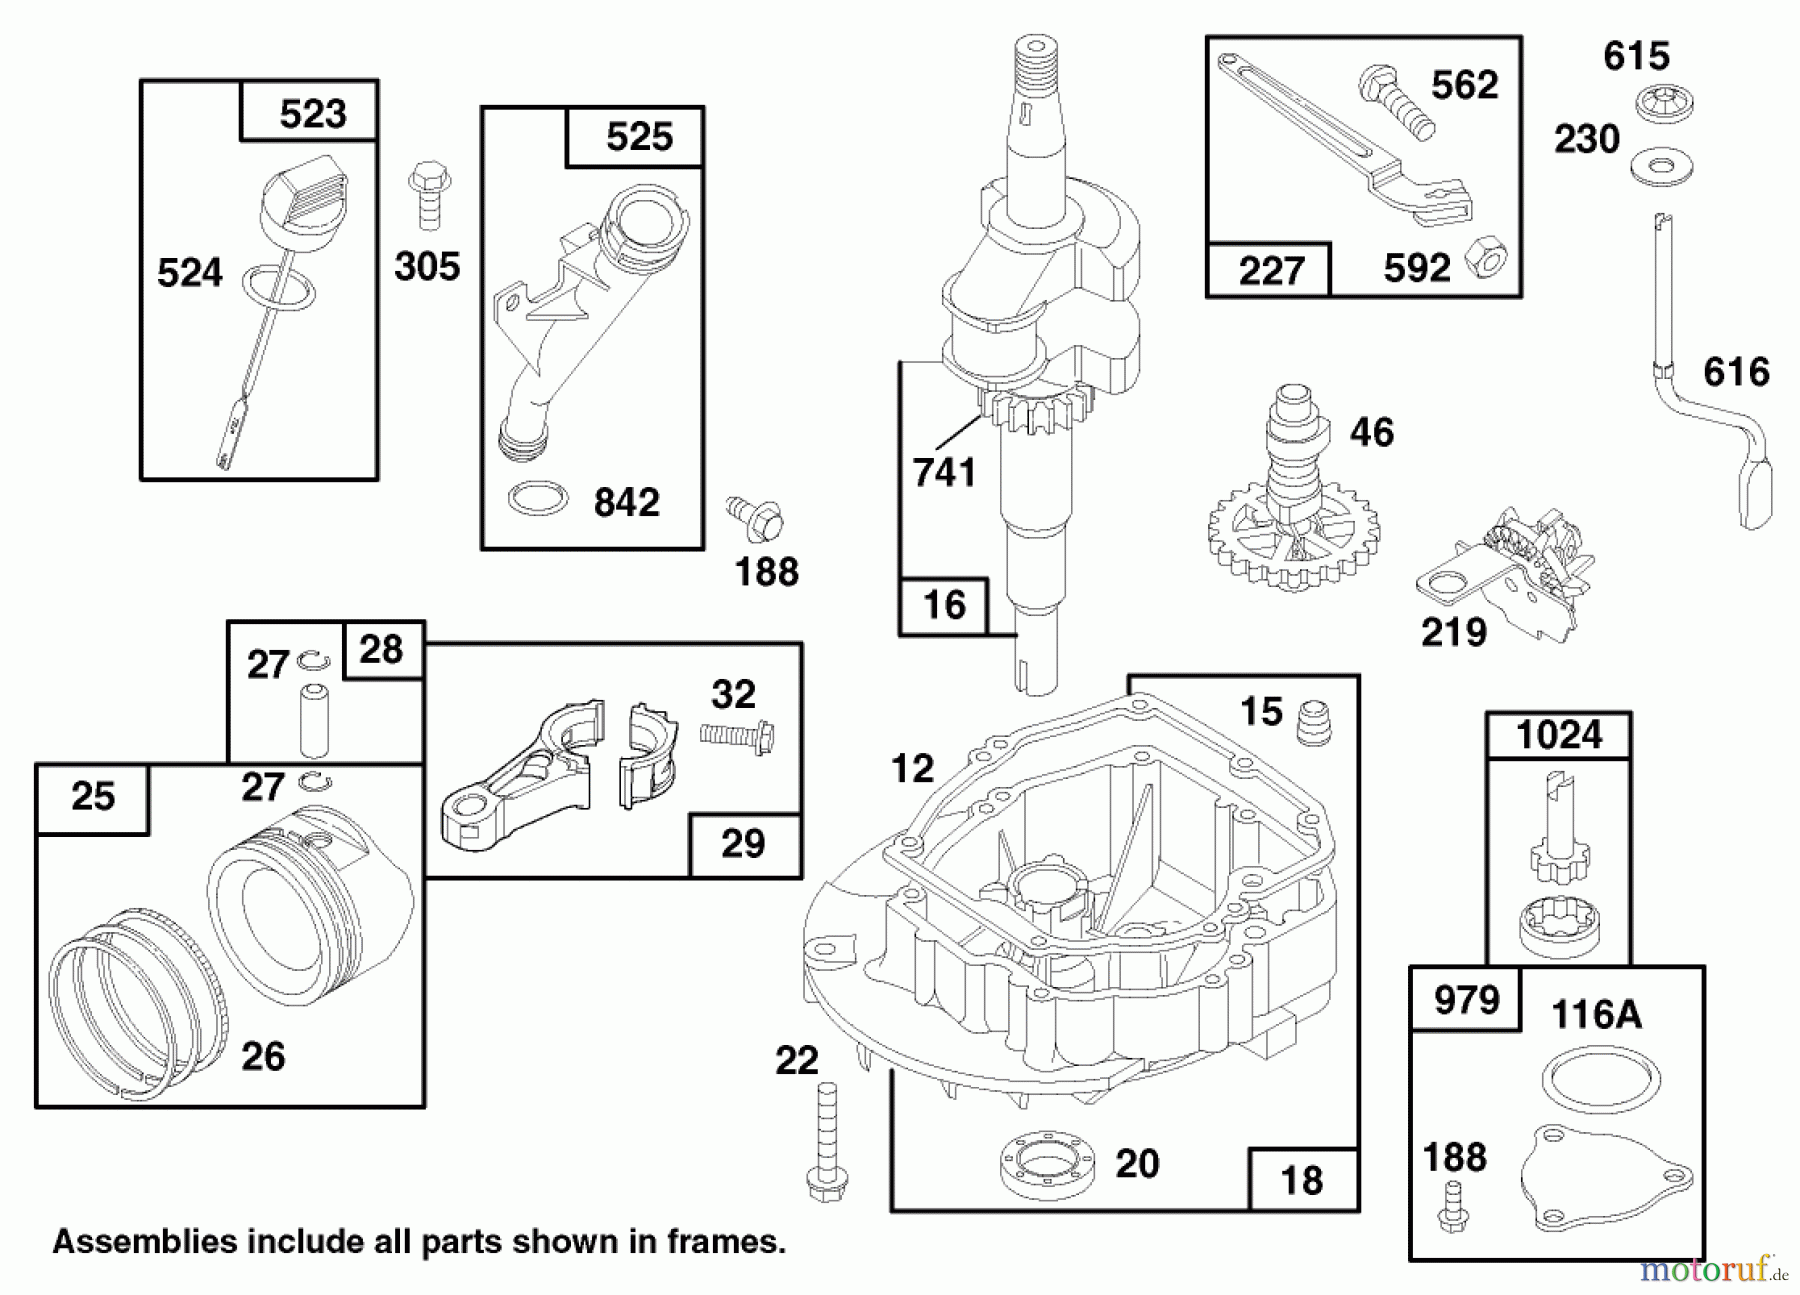  Toro Neu Mowers, Walk-Behind Seite 1 20465 - Toro Super Recycler Mower, 1997 (790000001-799999999) ENGINE GTS 150 #2